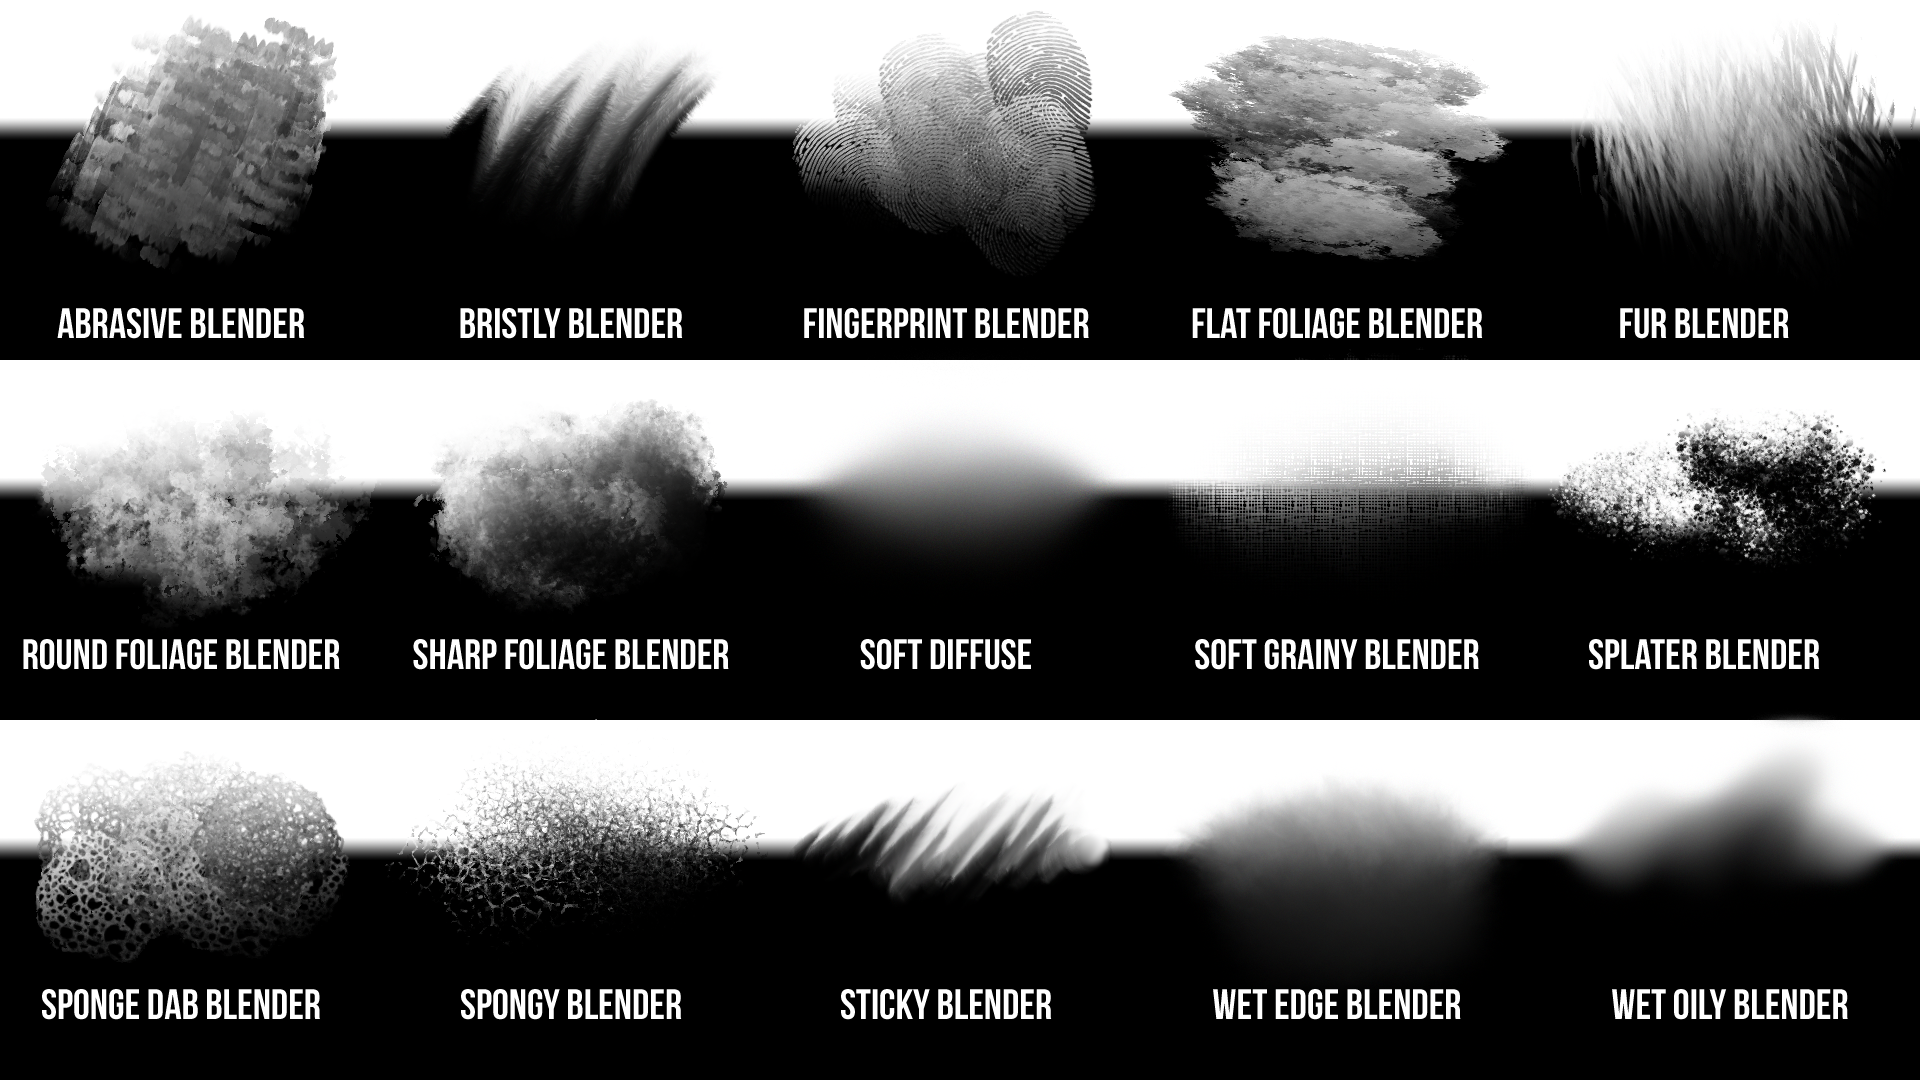 blender photoshop download